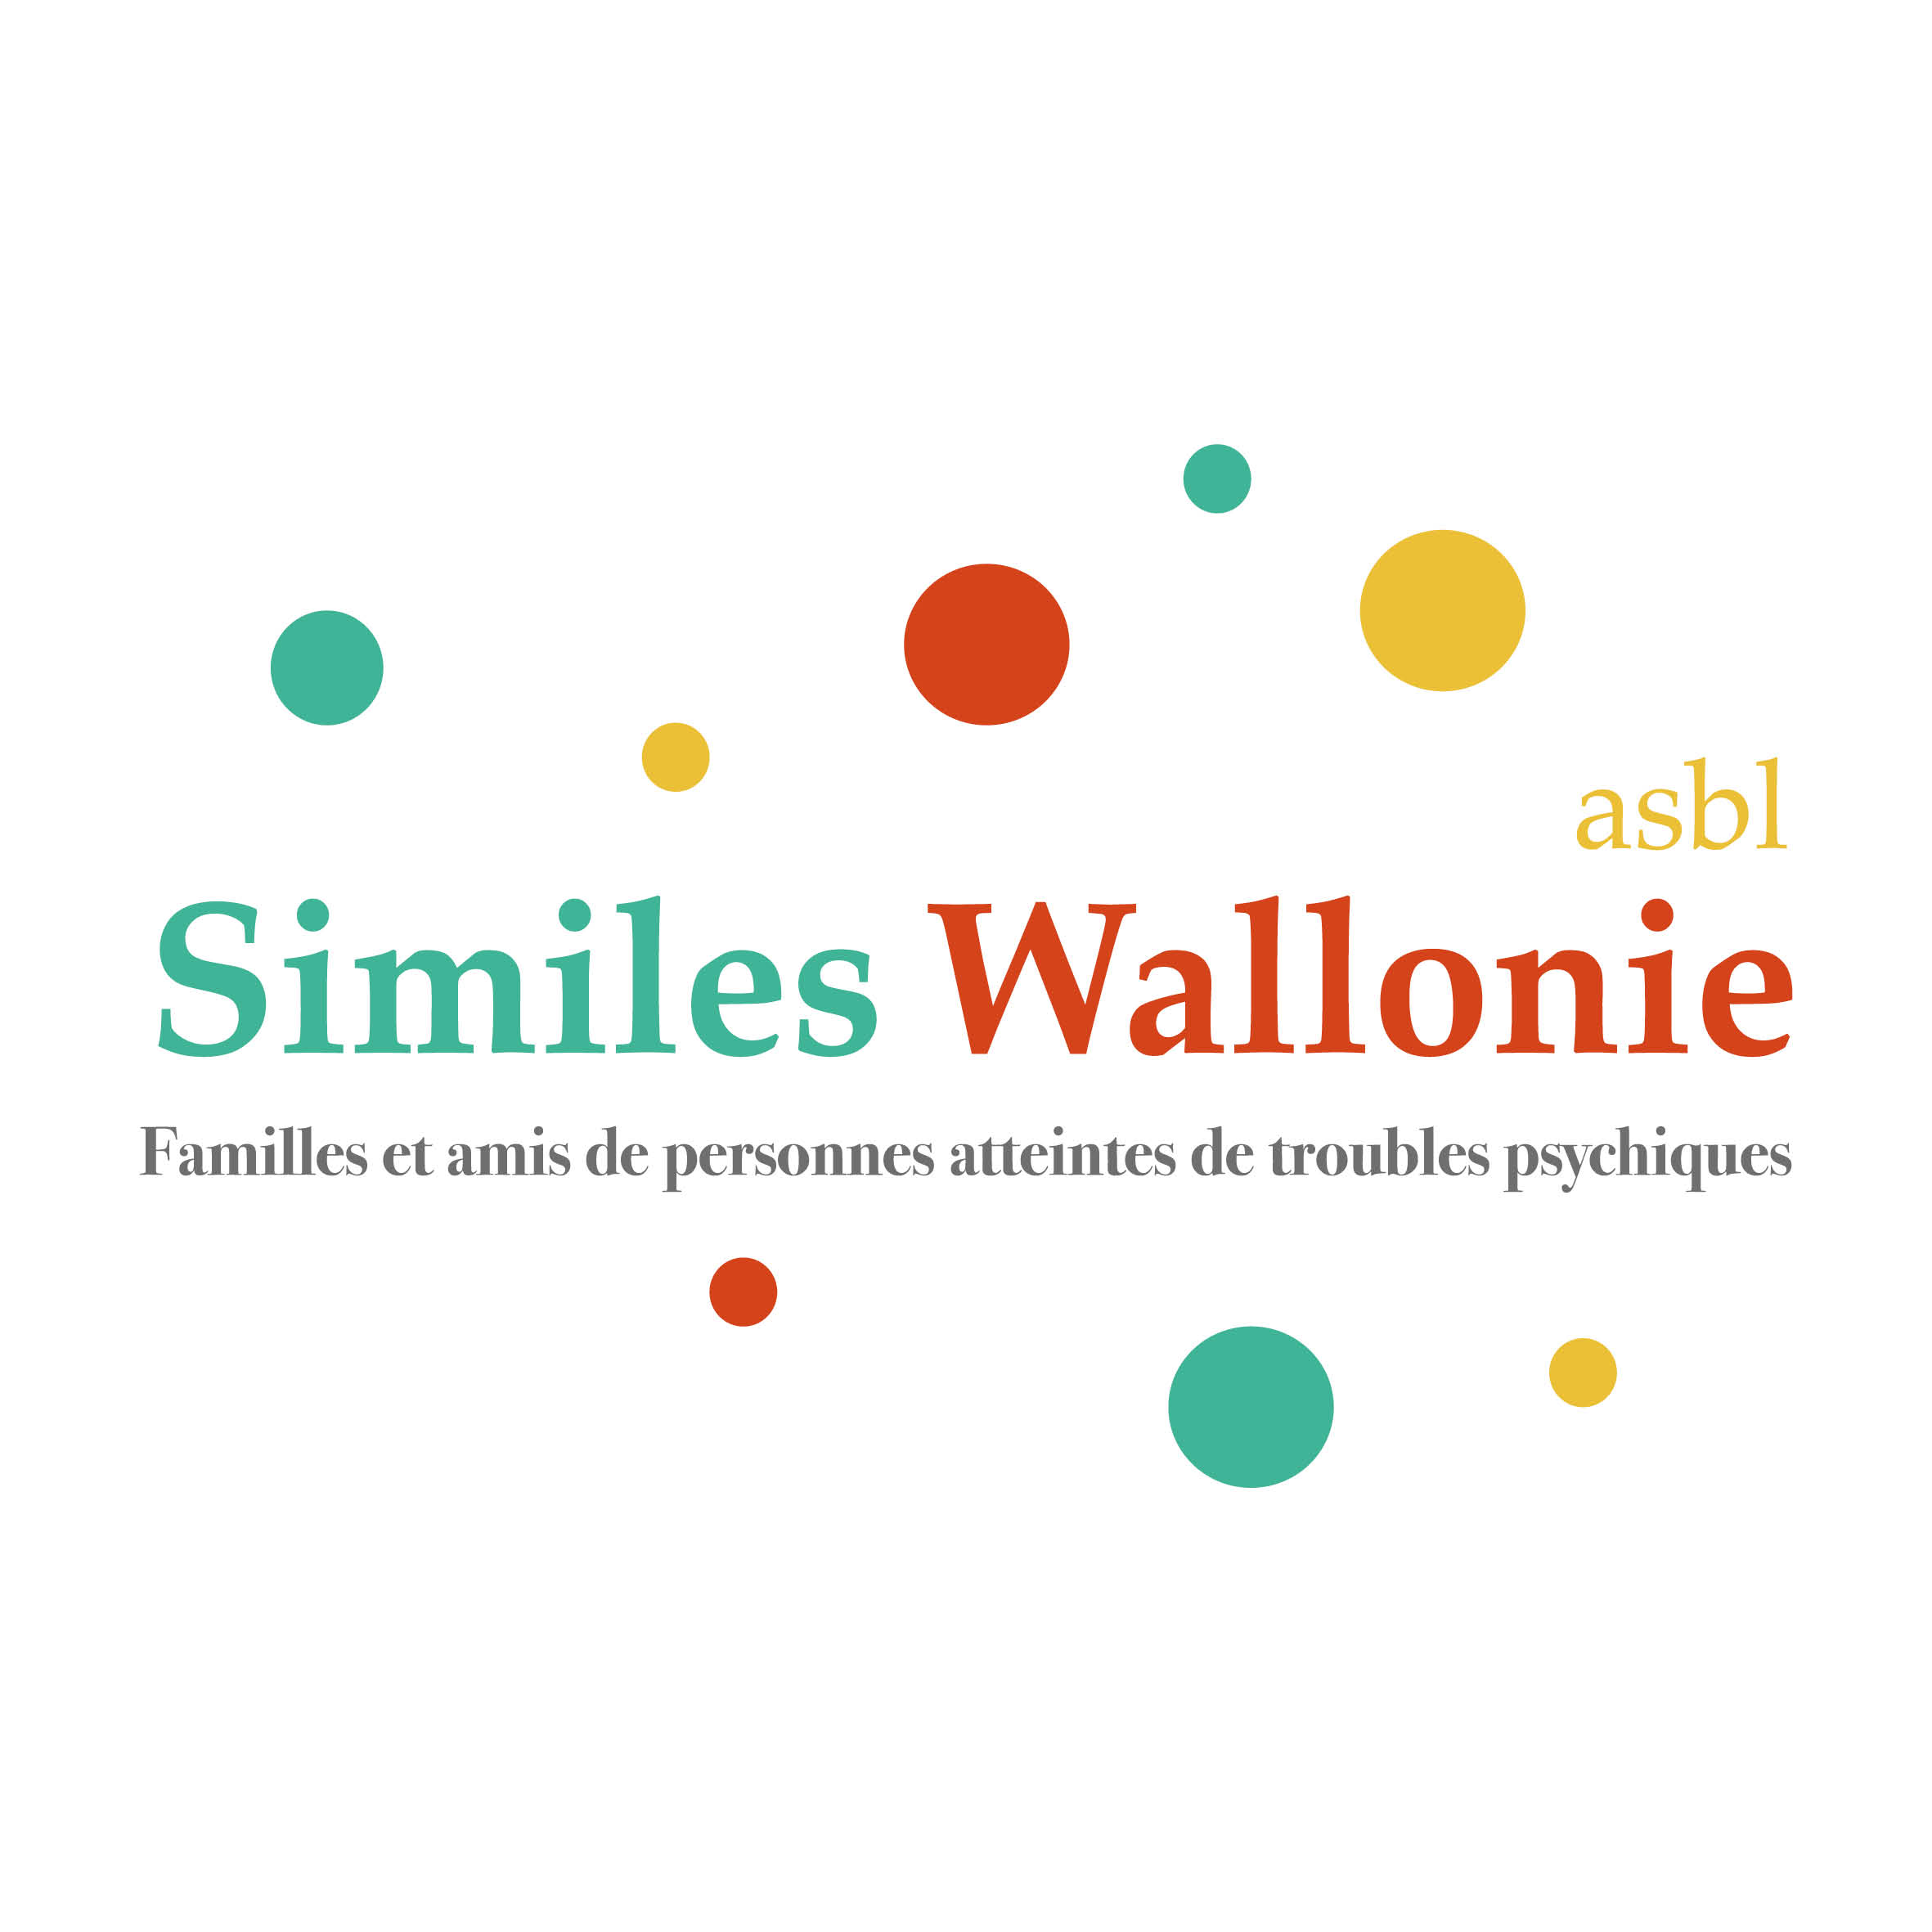 Association belge des familles et amis de personnes atteintes de troubles psychiques